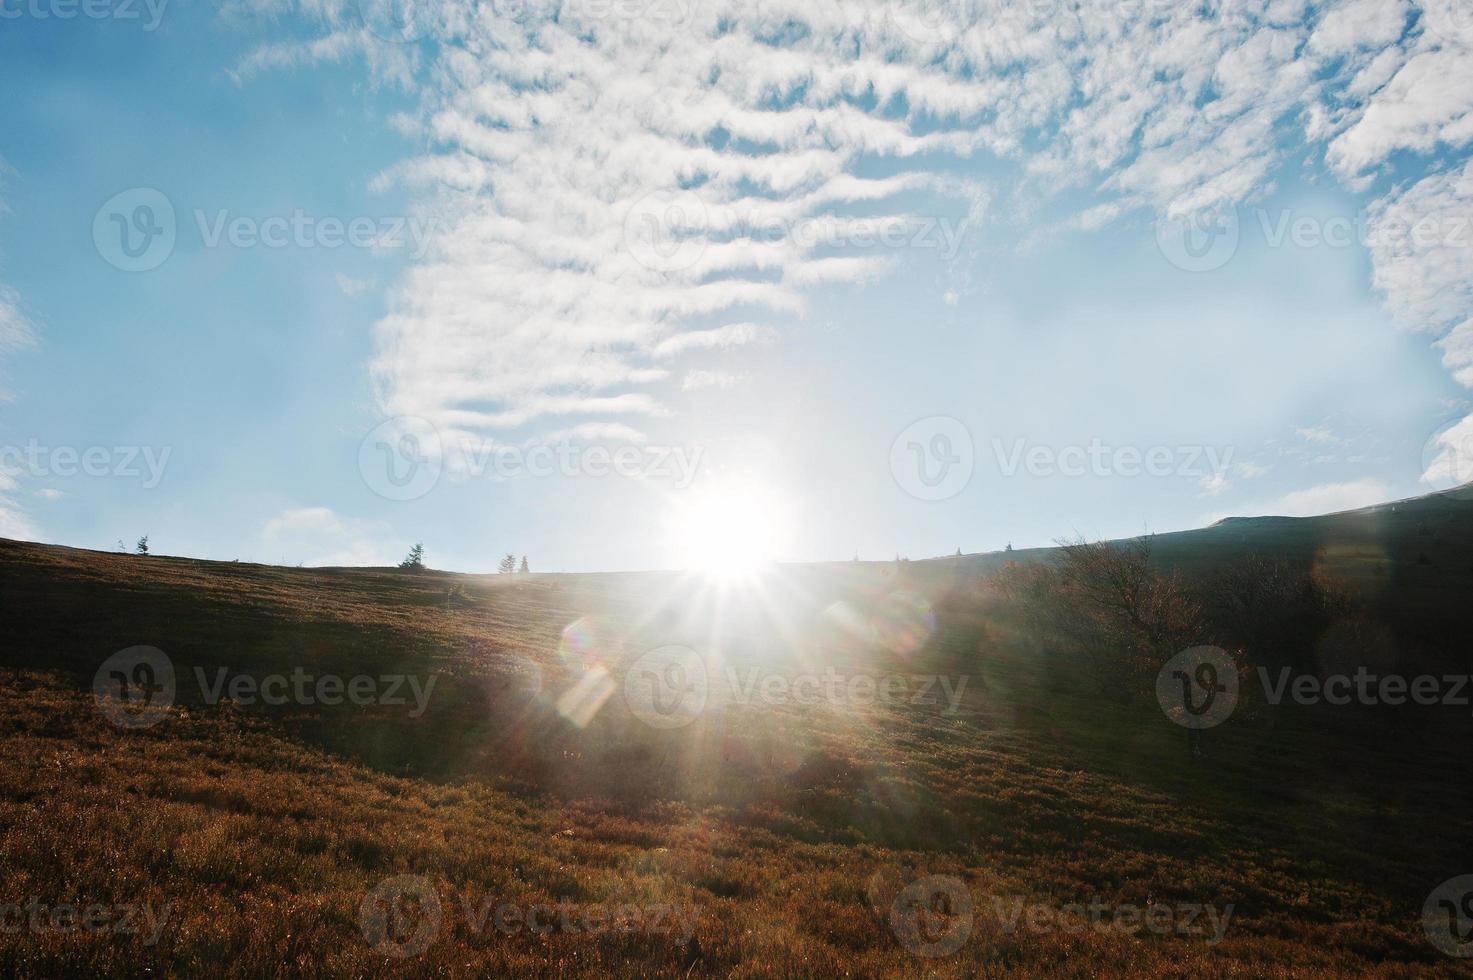 hemelse lucht met zonlicht op de Karpaten. schoonheid wereld foto